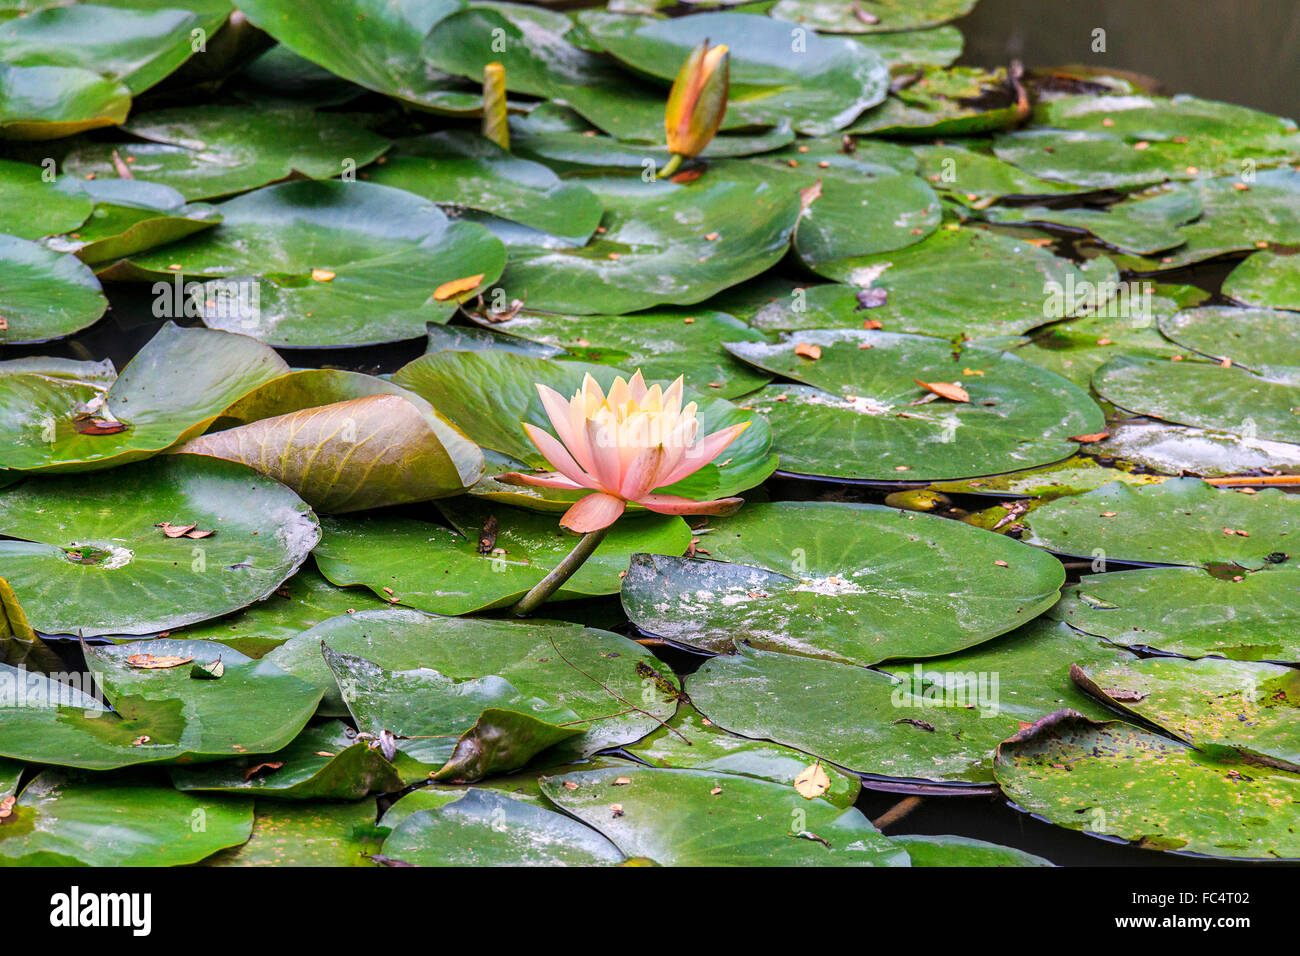 Blooming flores de loto. La flor de loto está asociado con la pureza y la belleza en las religiones del budismo y el Hinduismo. Foto de stock